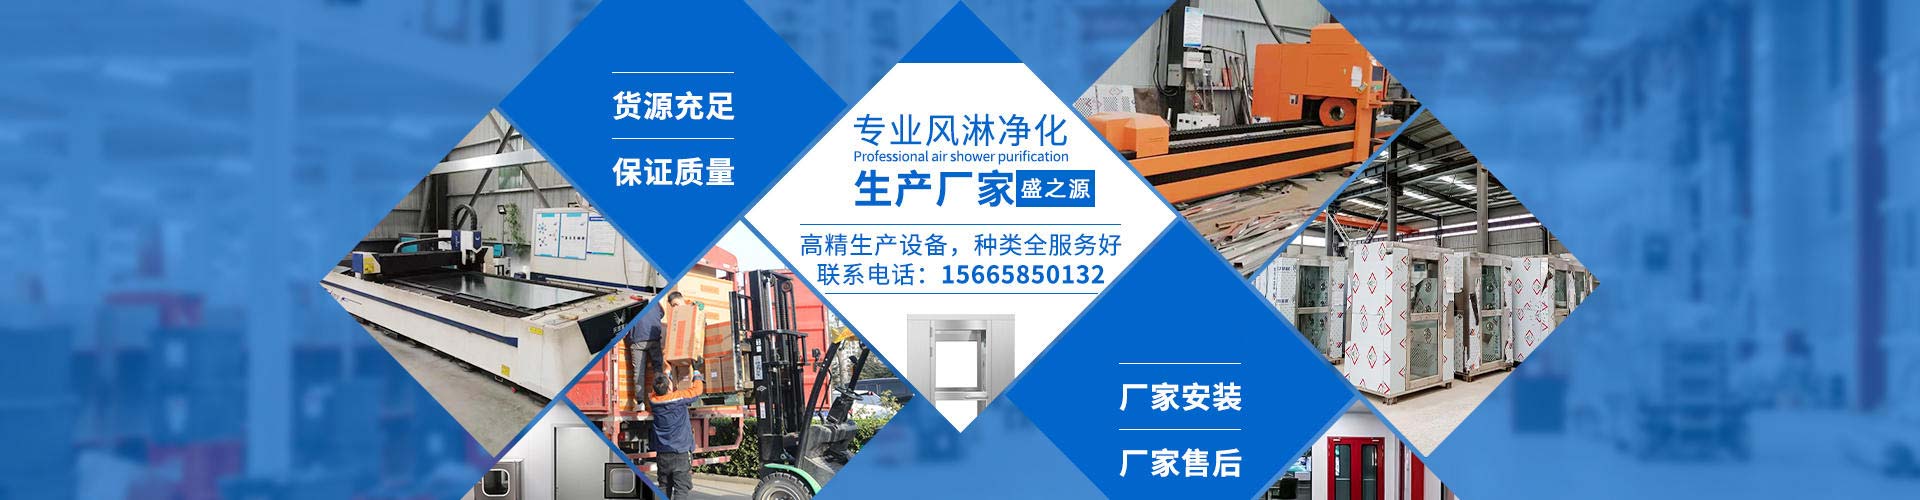 江苏ffu生产厂家 空气净化设备品牌